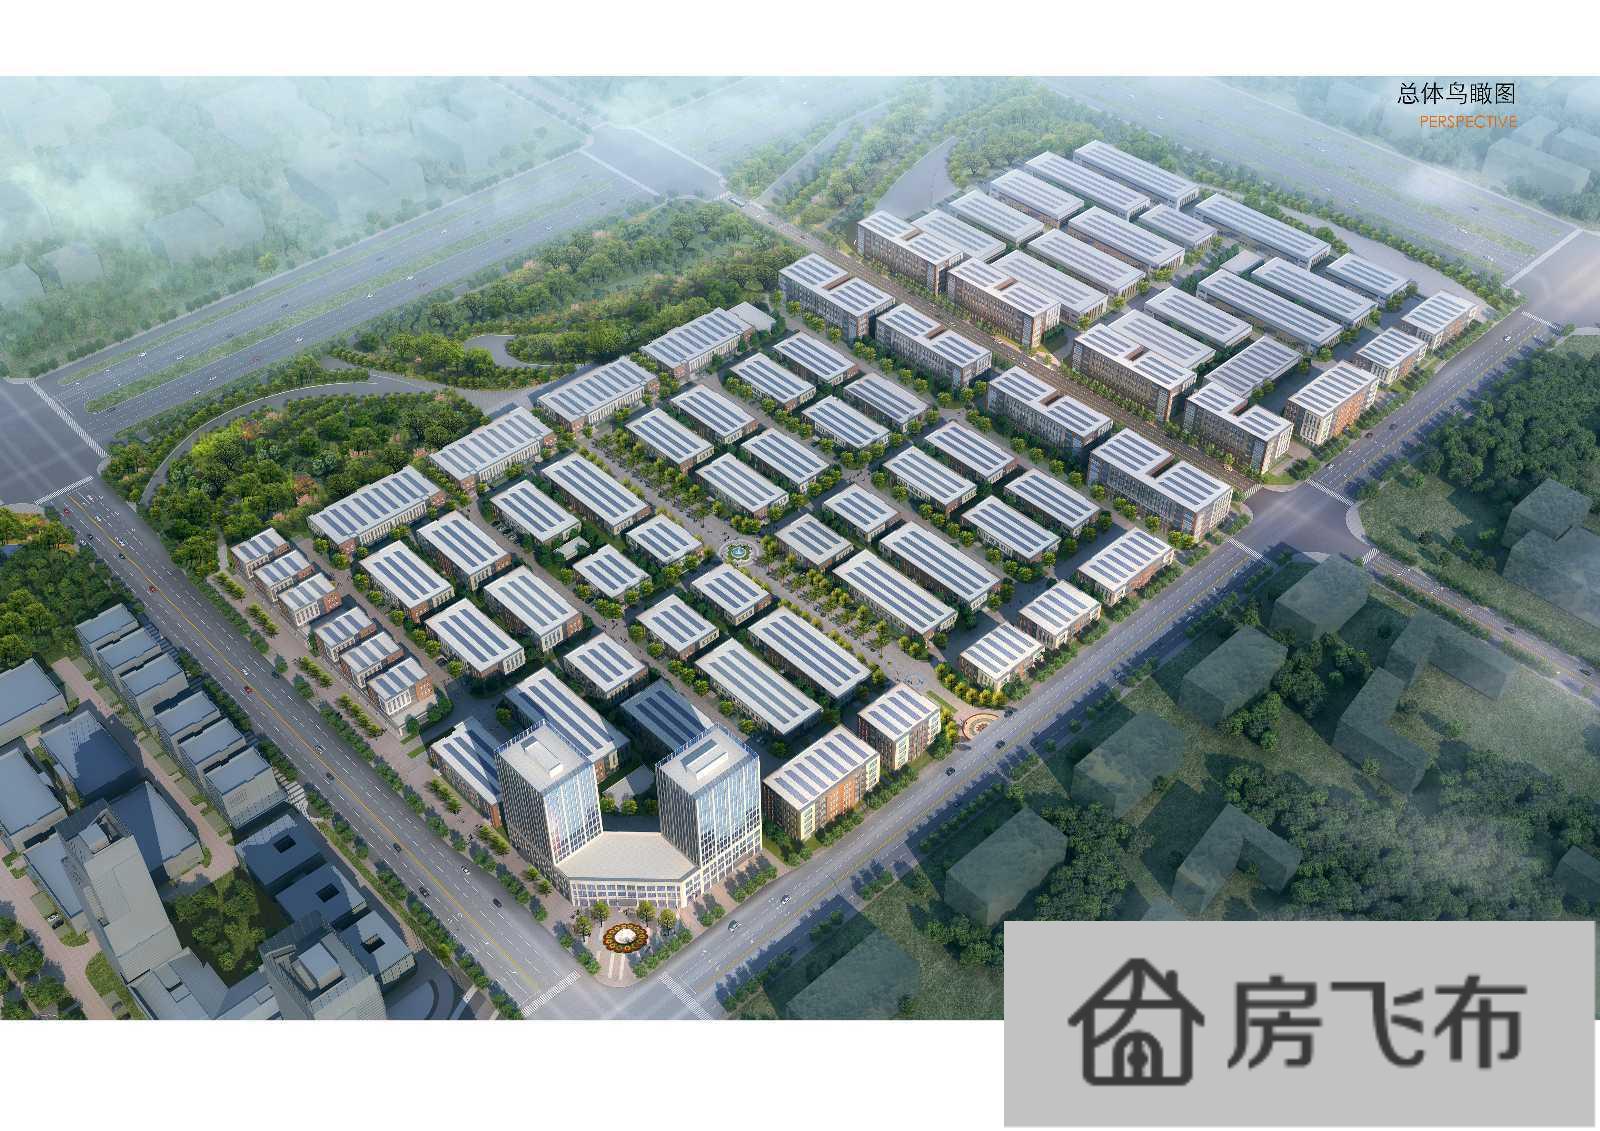 (出售) 西安渭河云谷智造小镇厂房出售 核心地理位置 重点工业项目